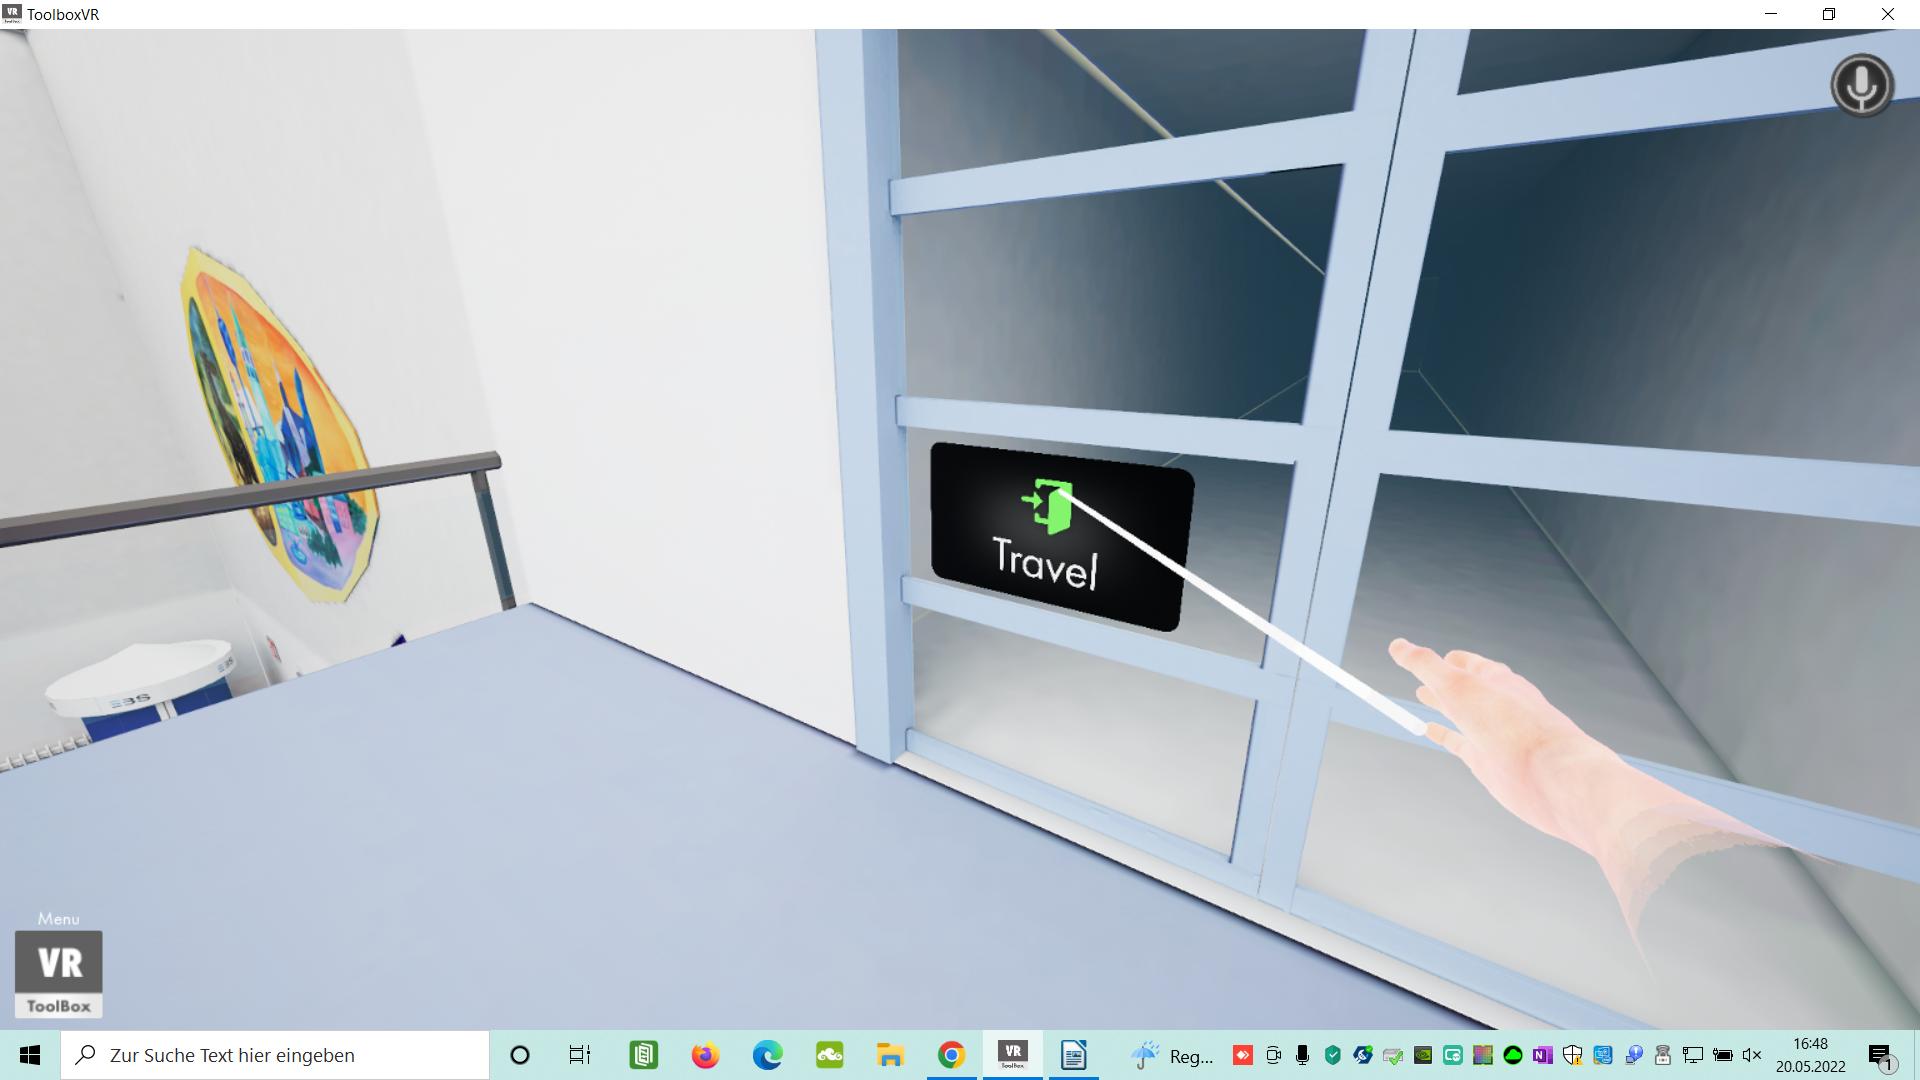 Um in den nächsten Raum zu gelangen, muss erst der Travel-Button aktiviert werden. Nachdem die Datei der VR-Umgebung heruntergeladen ist, lässt sie sich über den Join-Button betreten. Foto: © WIS/EBS/Screenshot